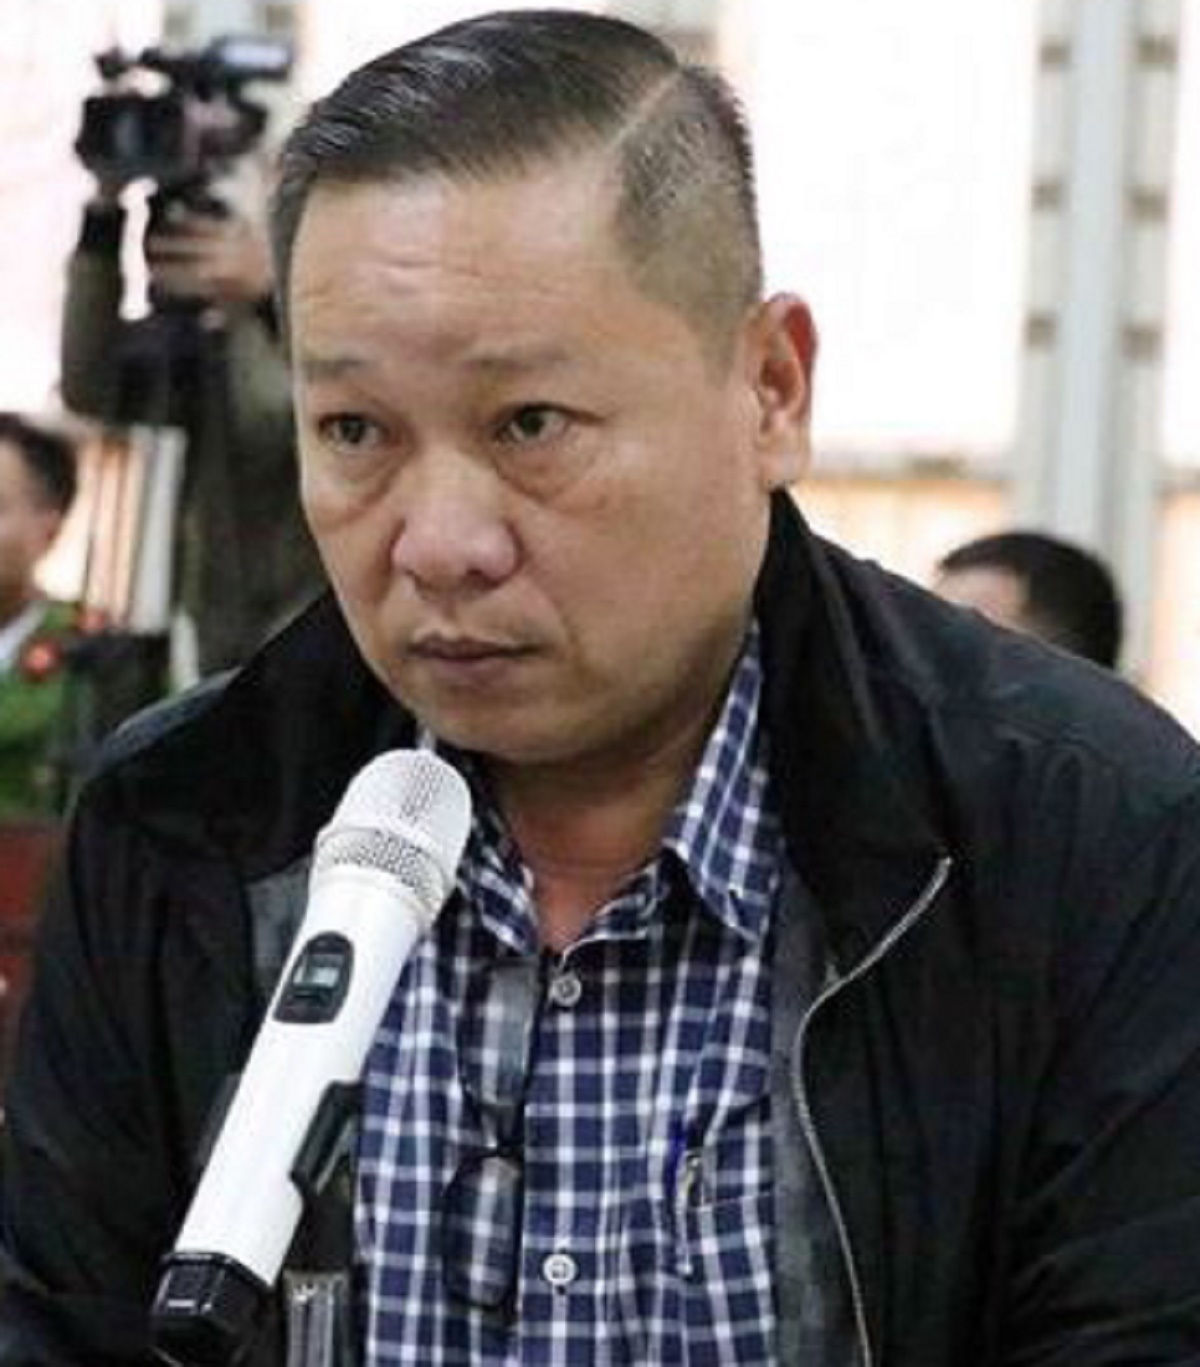 Phan Minh Cương là giám đốc Công ty TNHH Minh Hưng Phát, doanh nghiệp tặng xe ô tô cho cựu Bí thư Thành ủy Đà Nẵng Nguyễn Xuân Anh. Ảnh: Bộ Công an